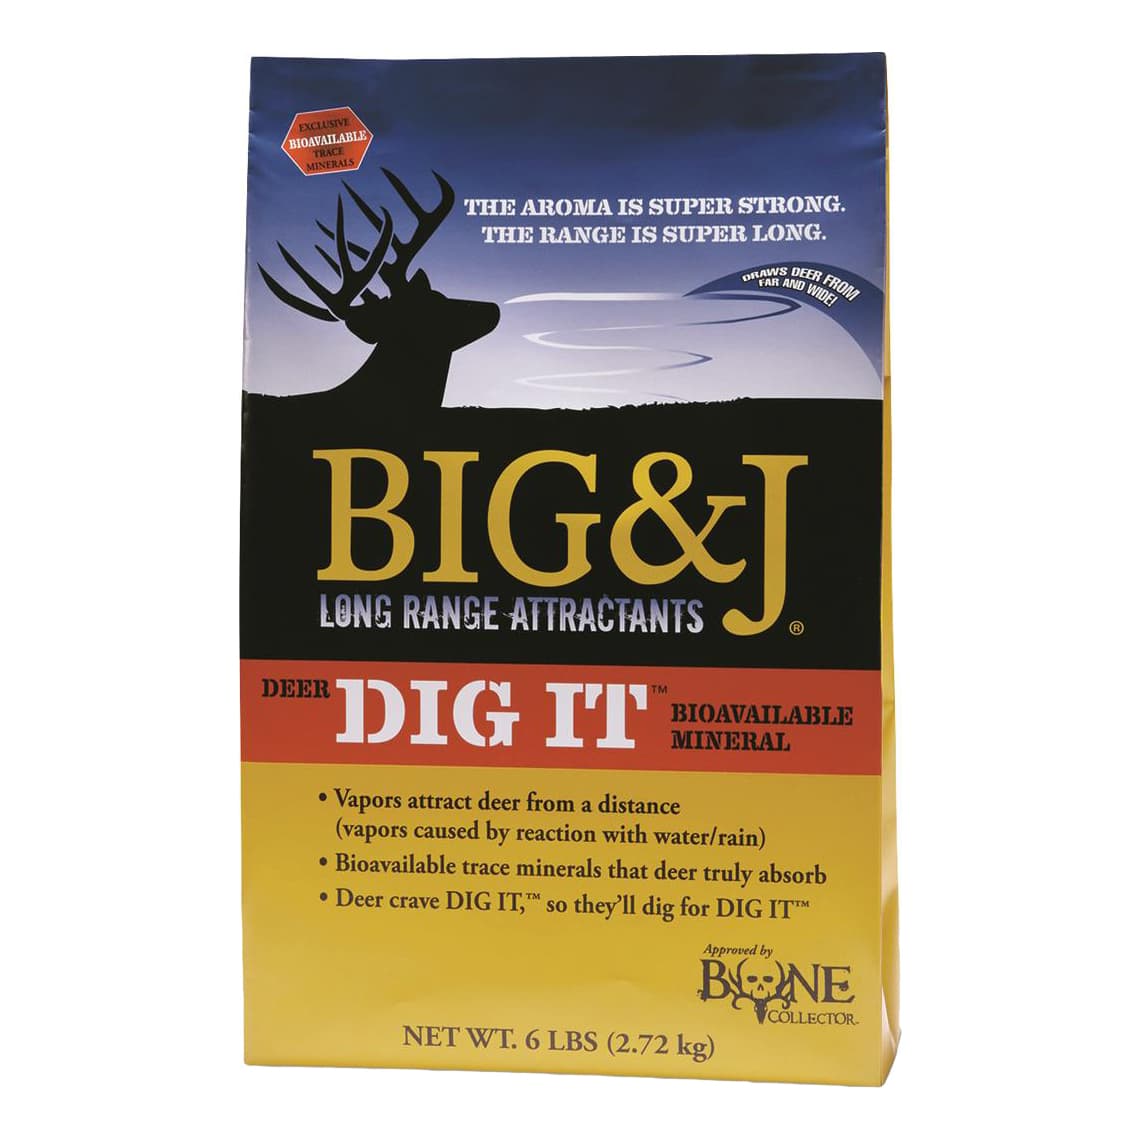 Big & J™ Deer Dig It Attractant